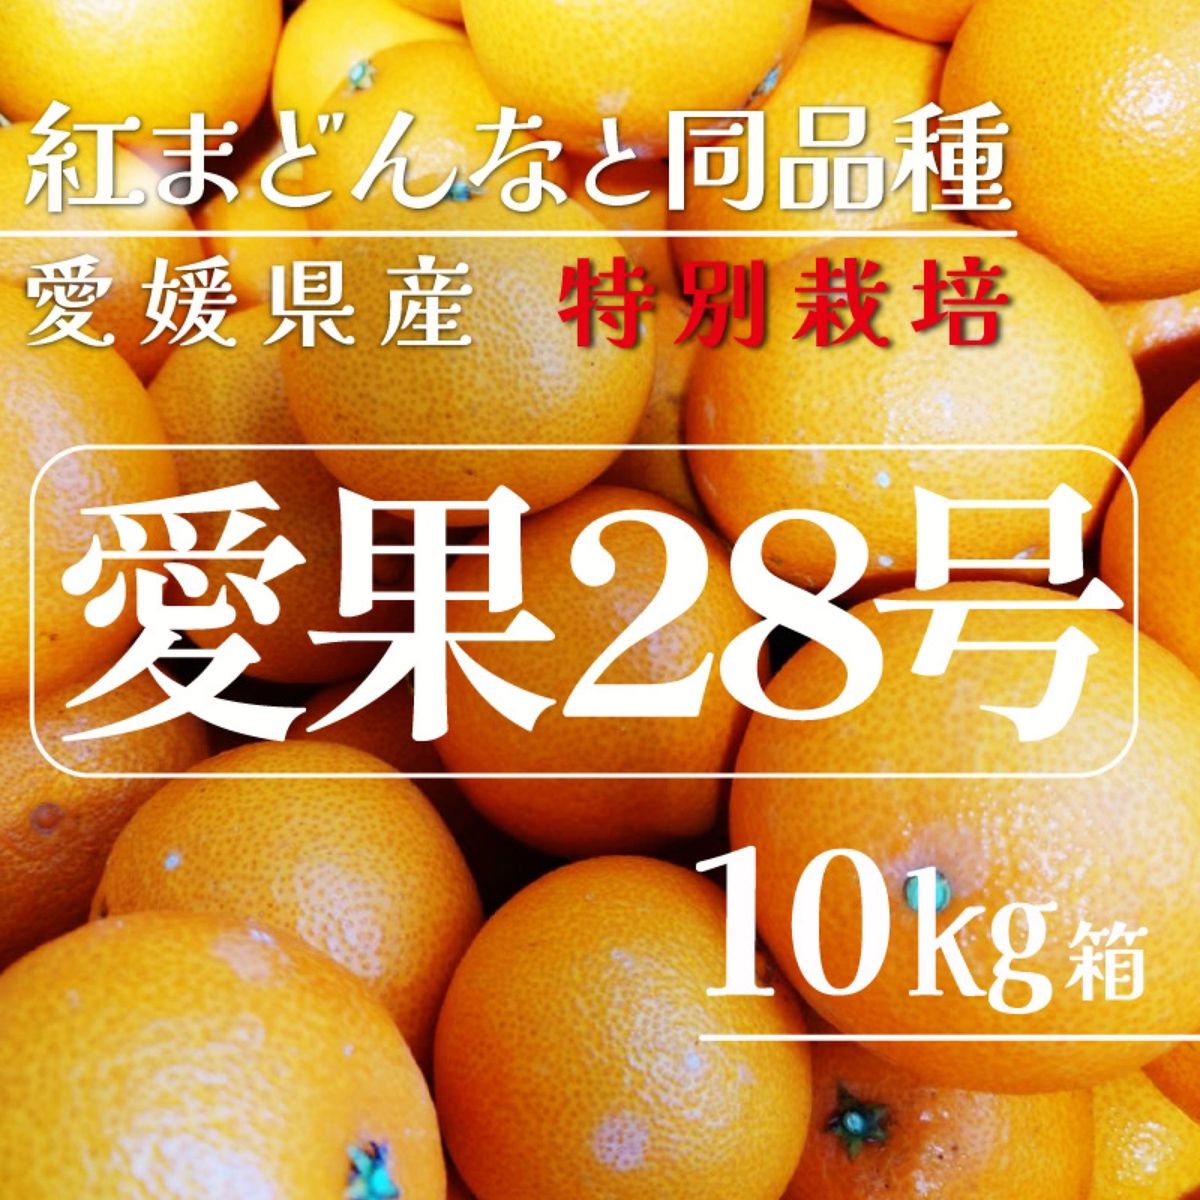 暴風雪の影響 愛媛県産 特別栽培 愛果28号10㎏箱（紅まどんなと同品種